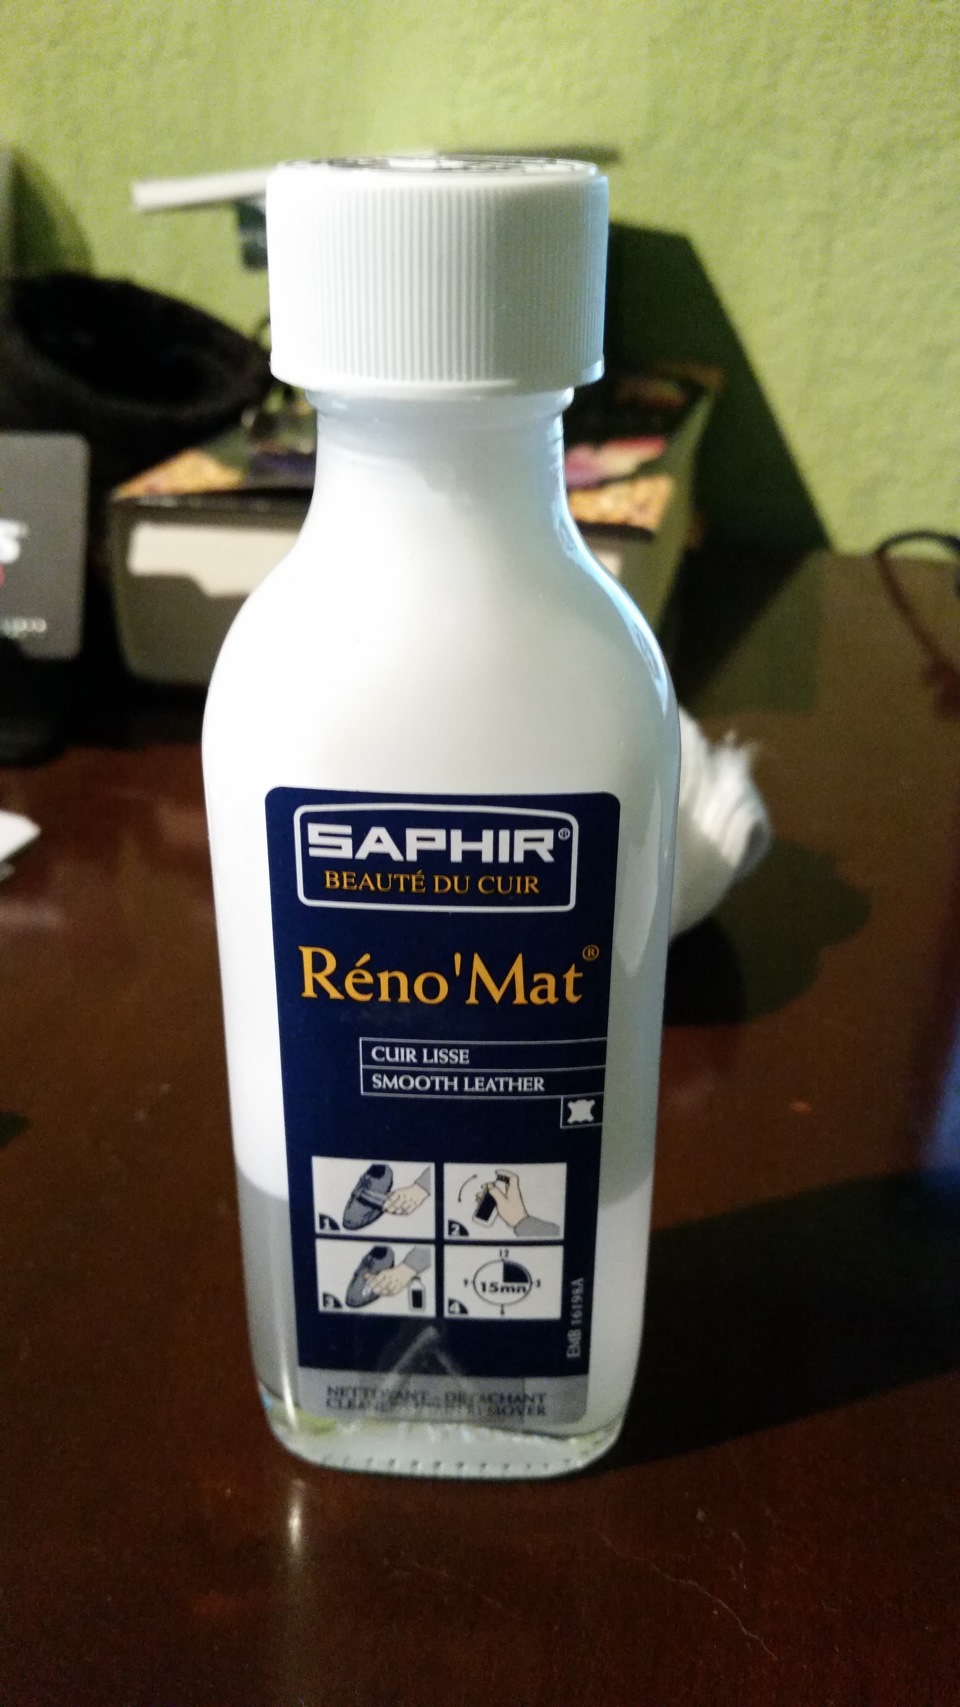 Reno mat. Сапфир Рено мат. Очиститель реномат сапфир. Saphir Reno mat. Пропитка Saphir Reno mat.